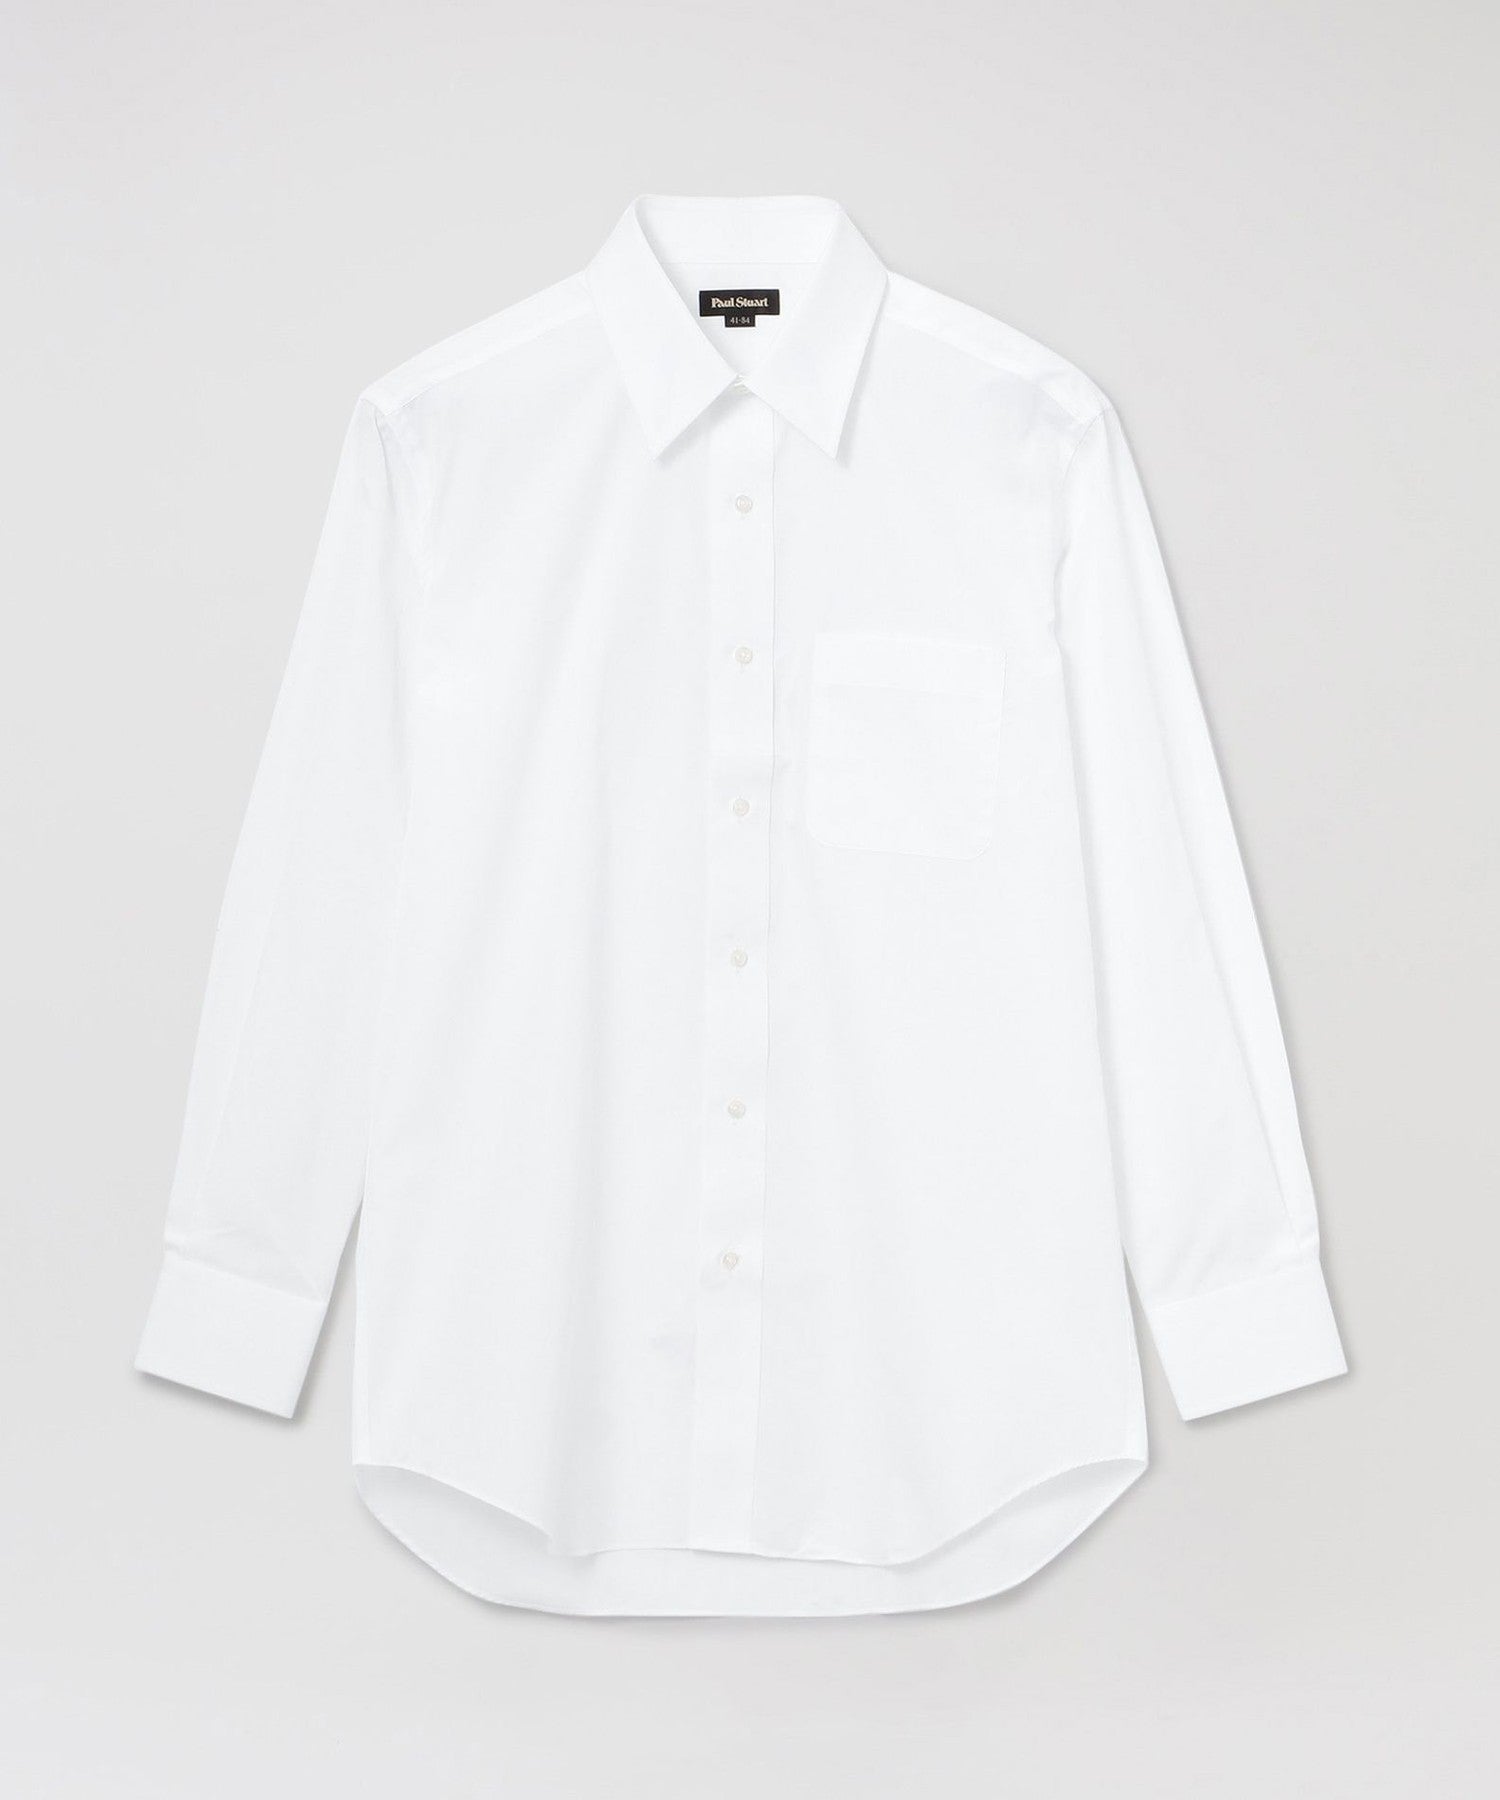 NEW ARRIVAL16.5万円相当の高級ドレスシャツ8枚セットポールスミス 、LANVIN等 トップス